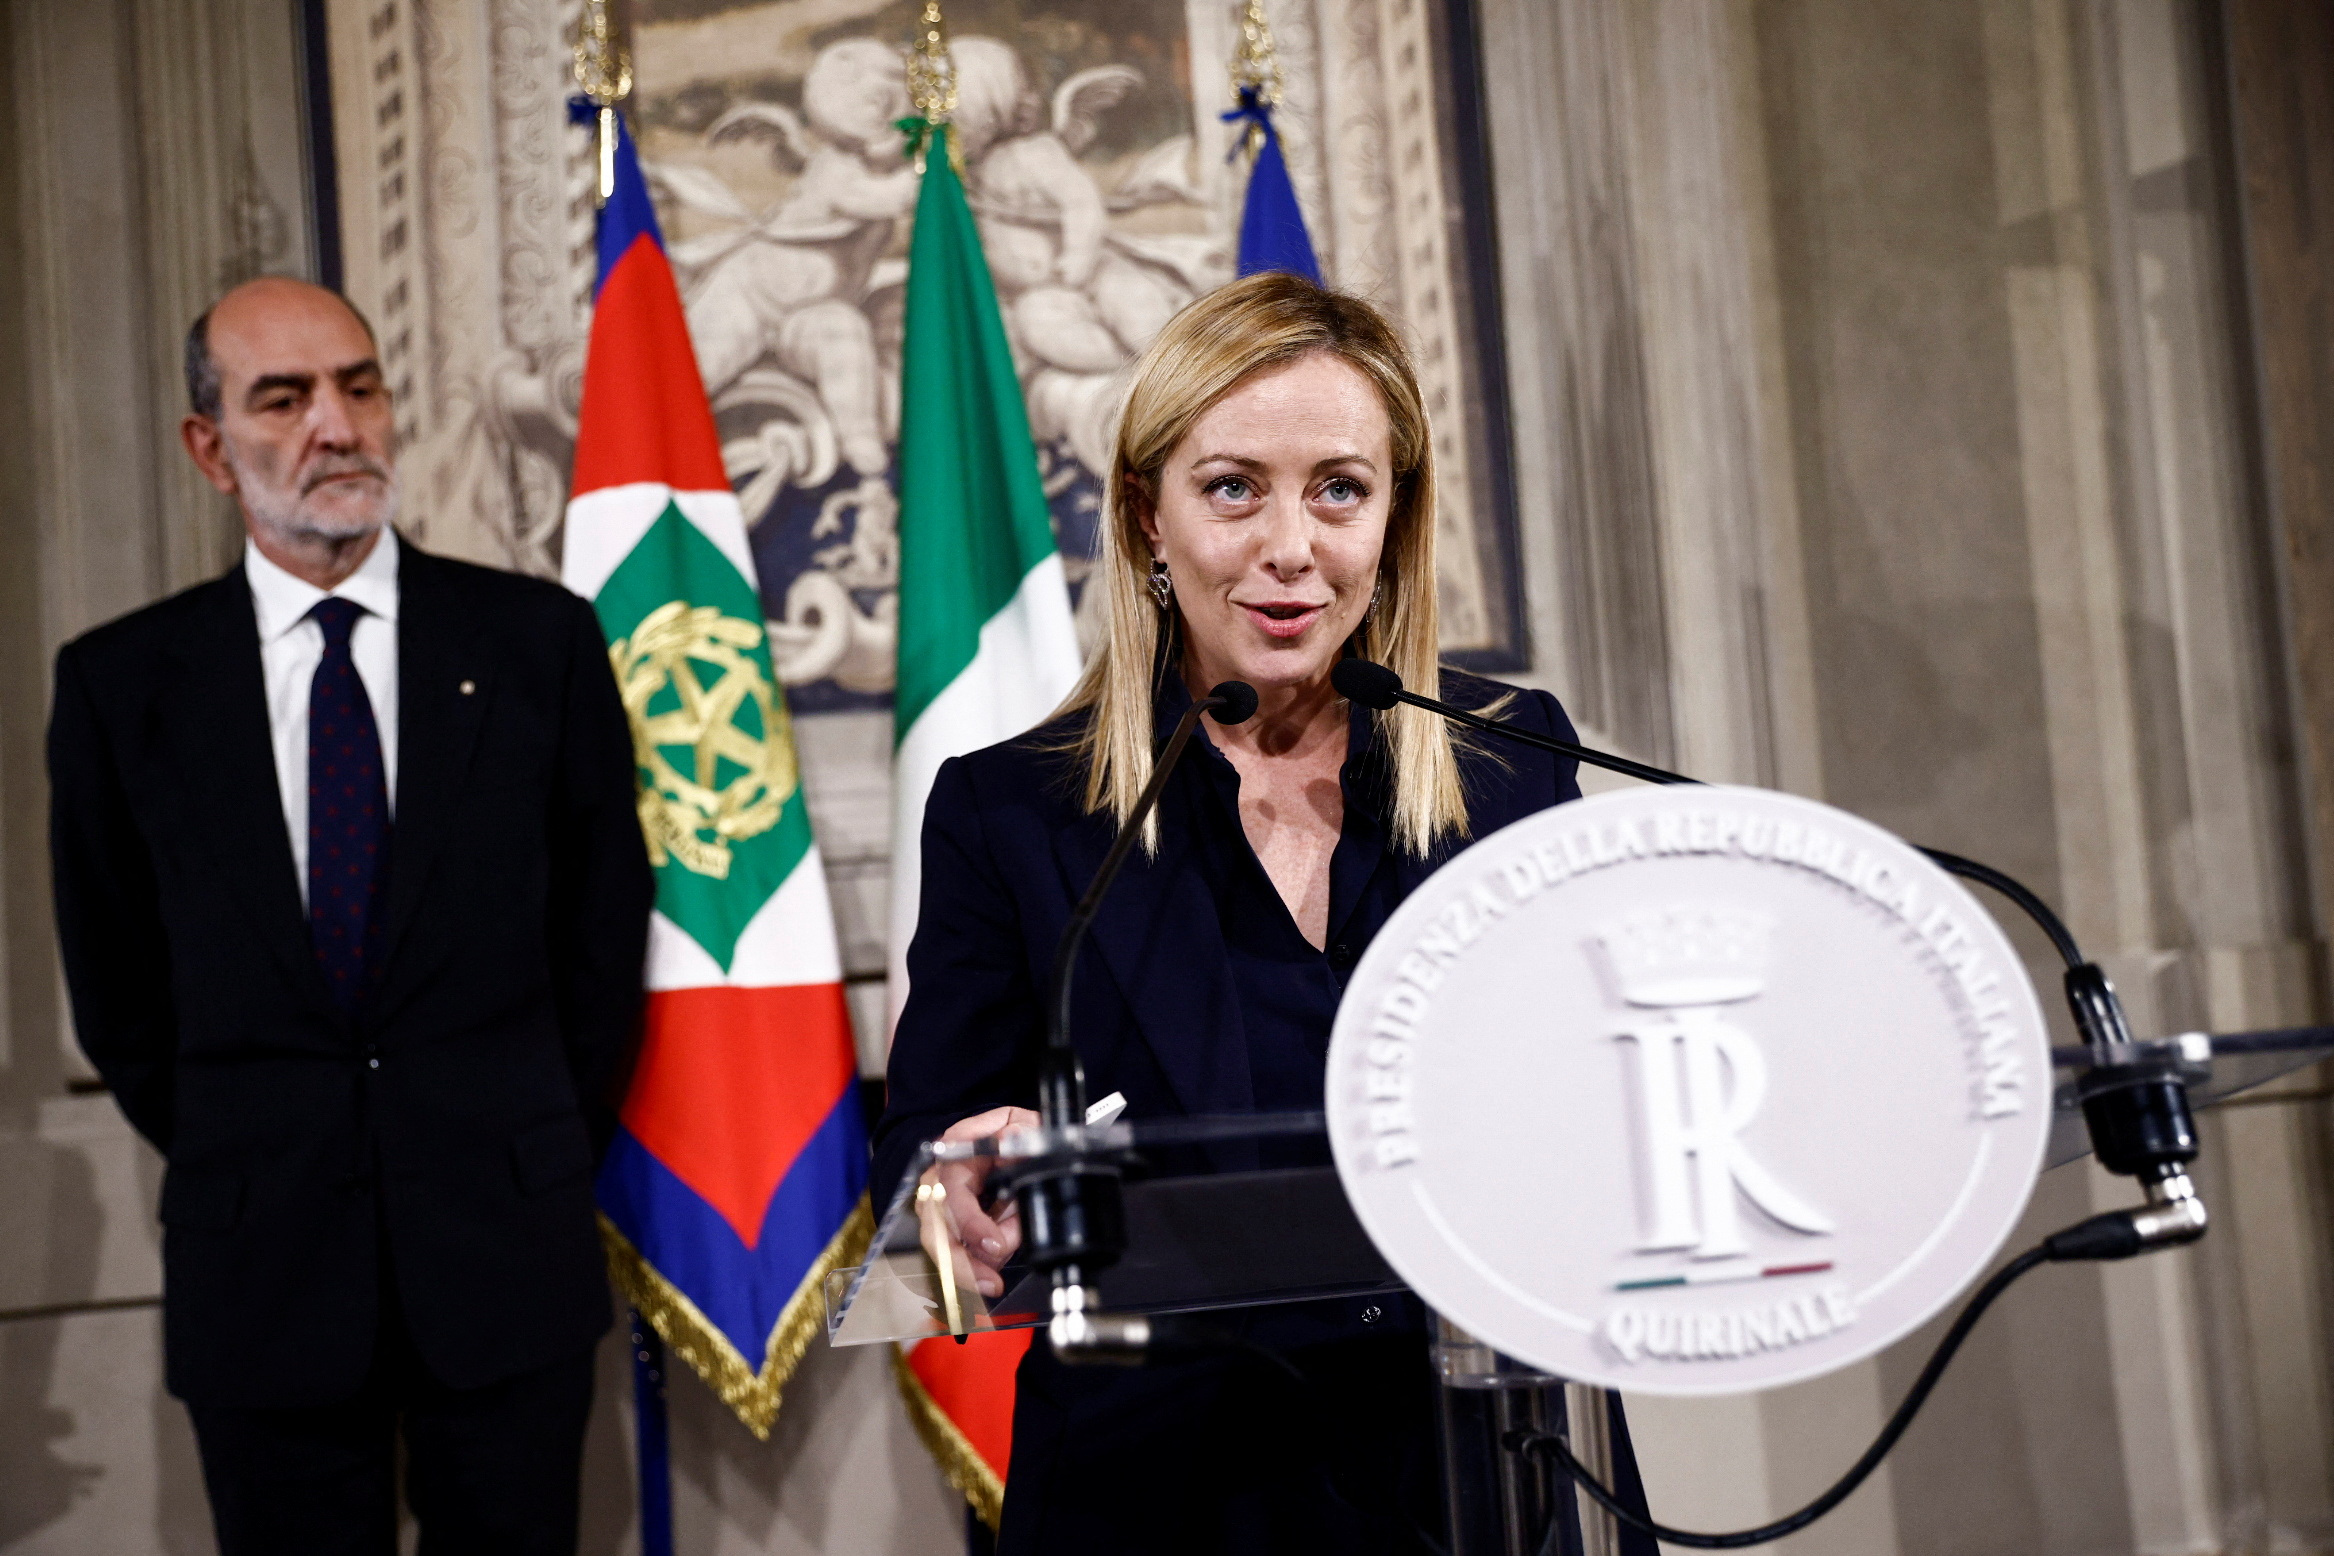 Ιταλία: Η κυβέρνηση της Τζόρτζια Μελόνι χαλαρώνει όλα τα μέτρα για τον κορονοϊό